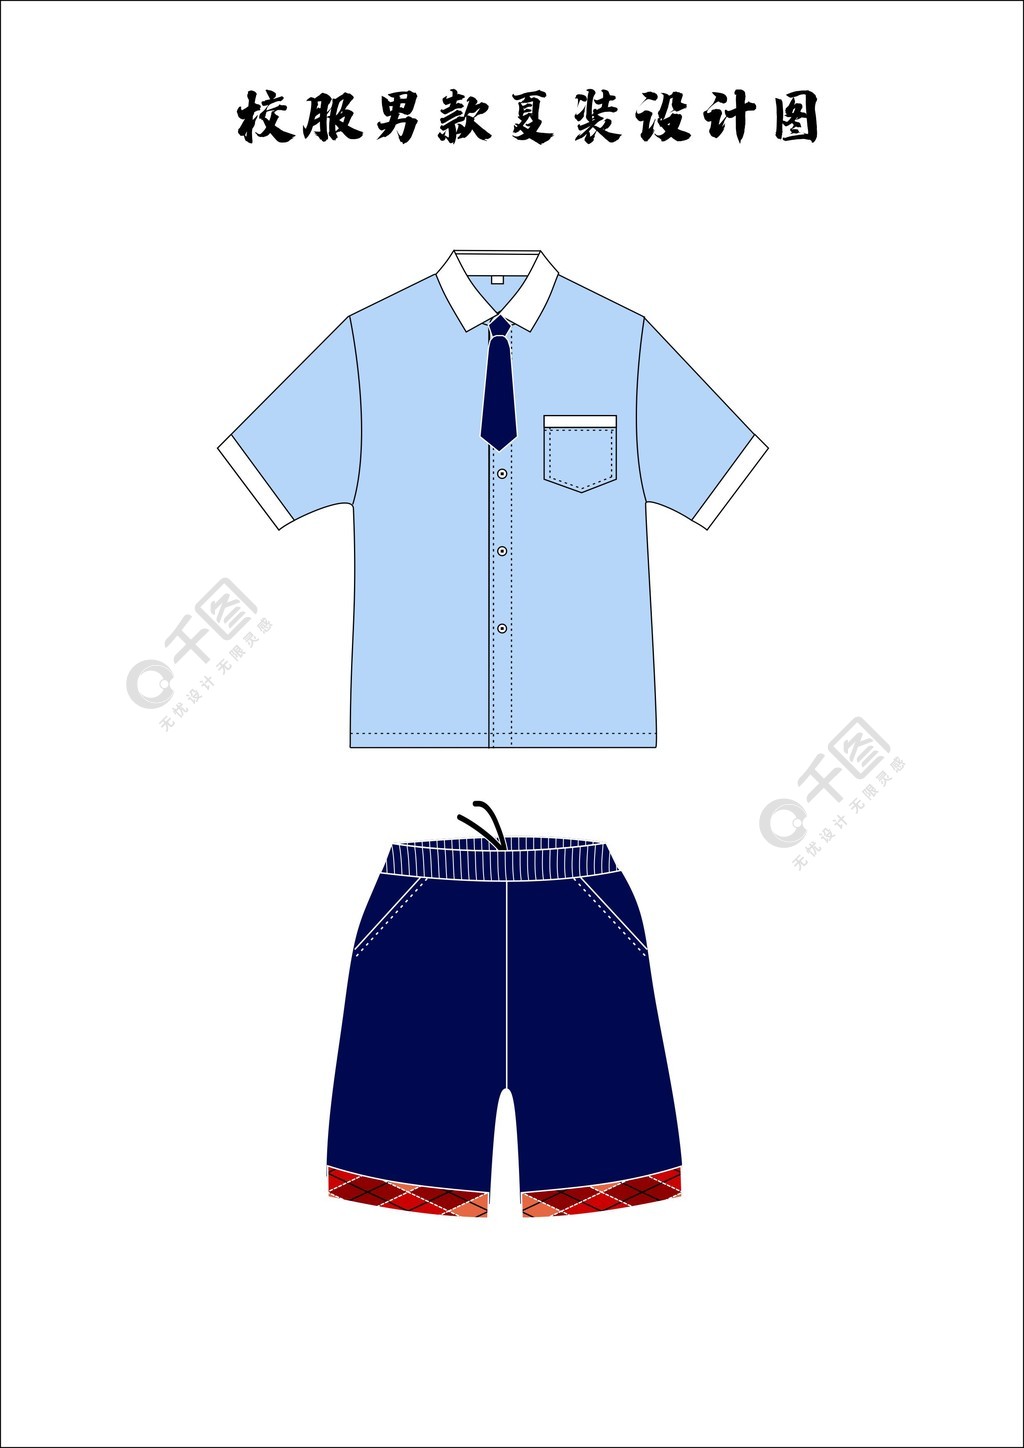 服装设计中小学校服夏季款式图效果图矢量图